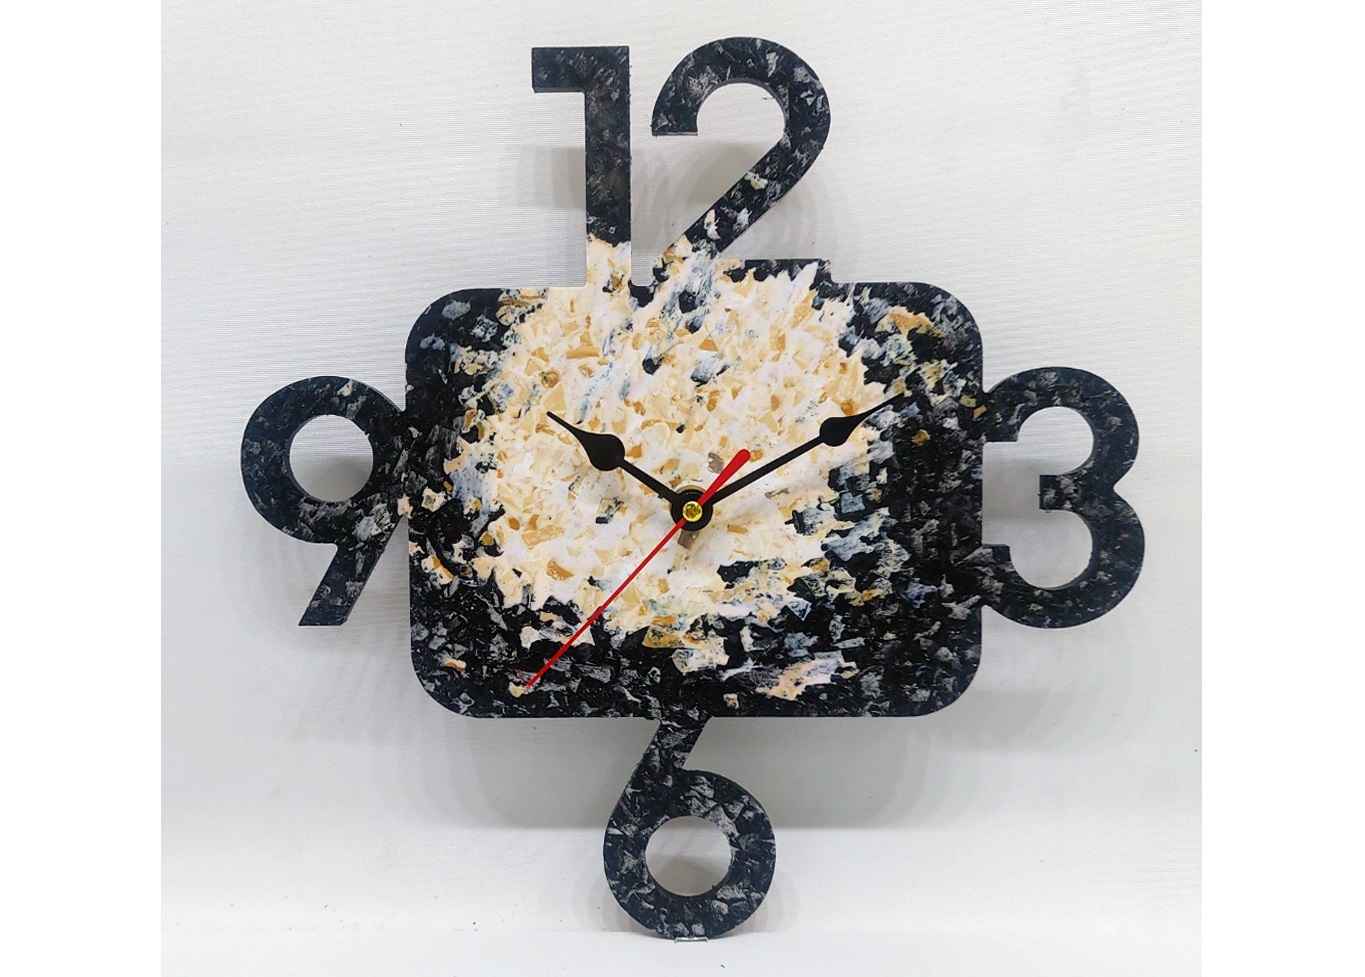 폐플라스틱장난감100%로 만든 트루의 벽시계 텀블벅에서 첫선보여